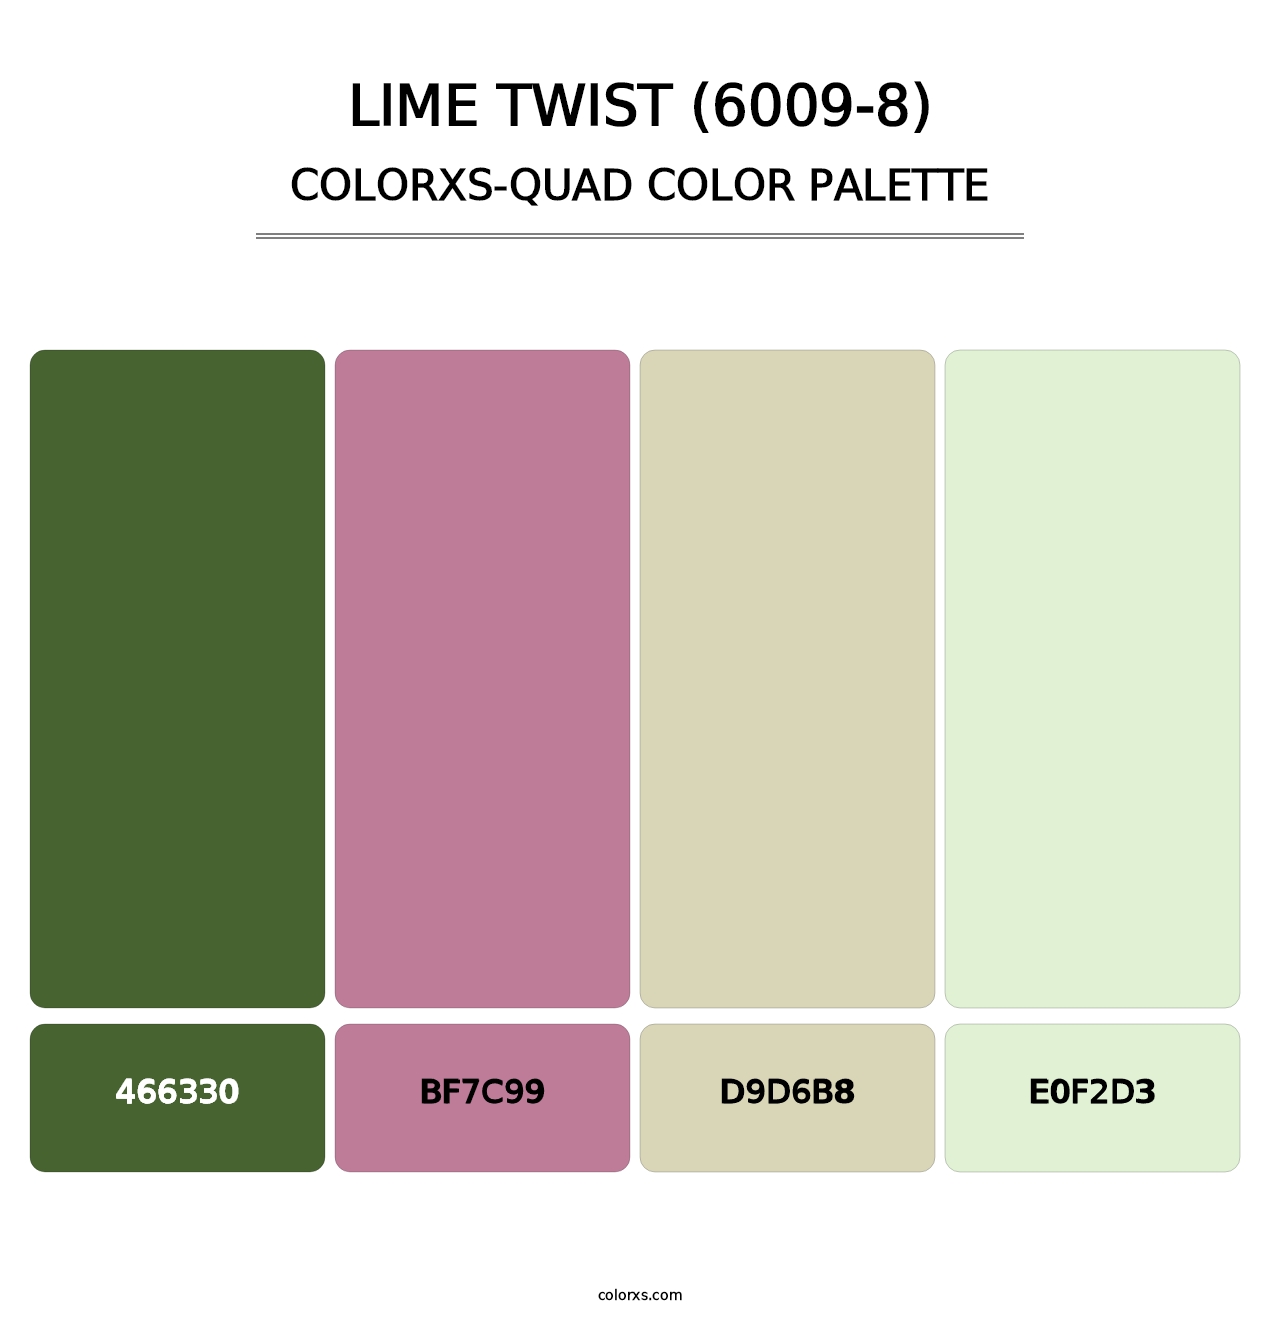 Lime Twist (6009-8) - Colorxs Quad Palette